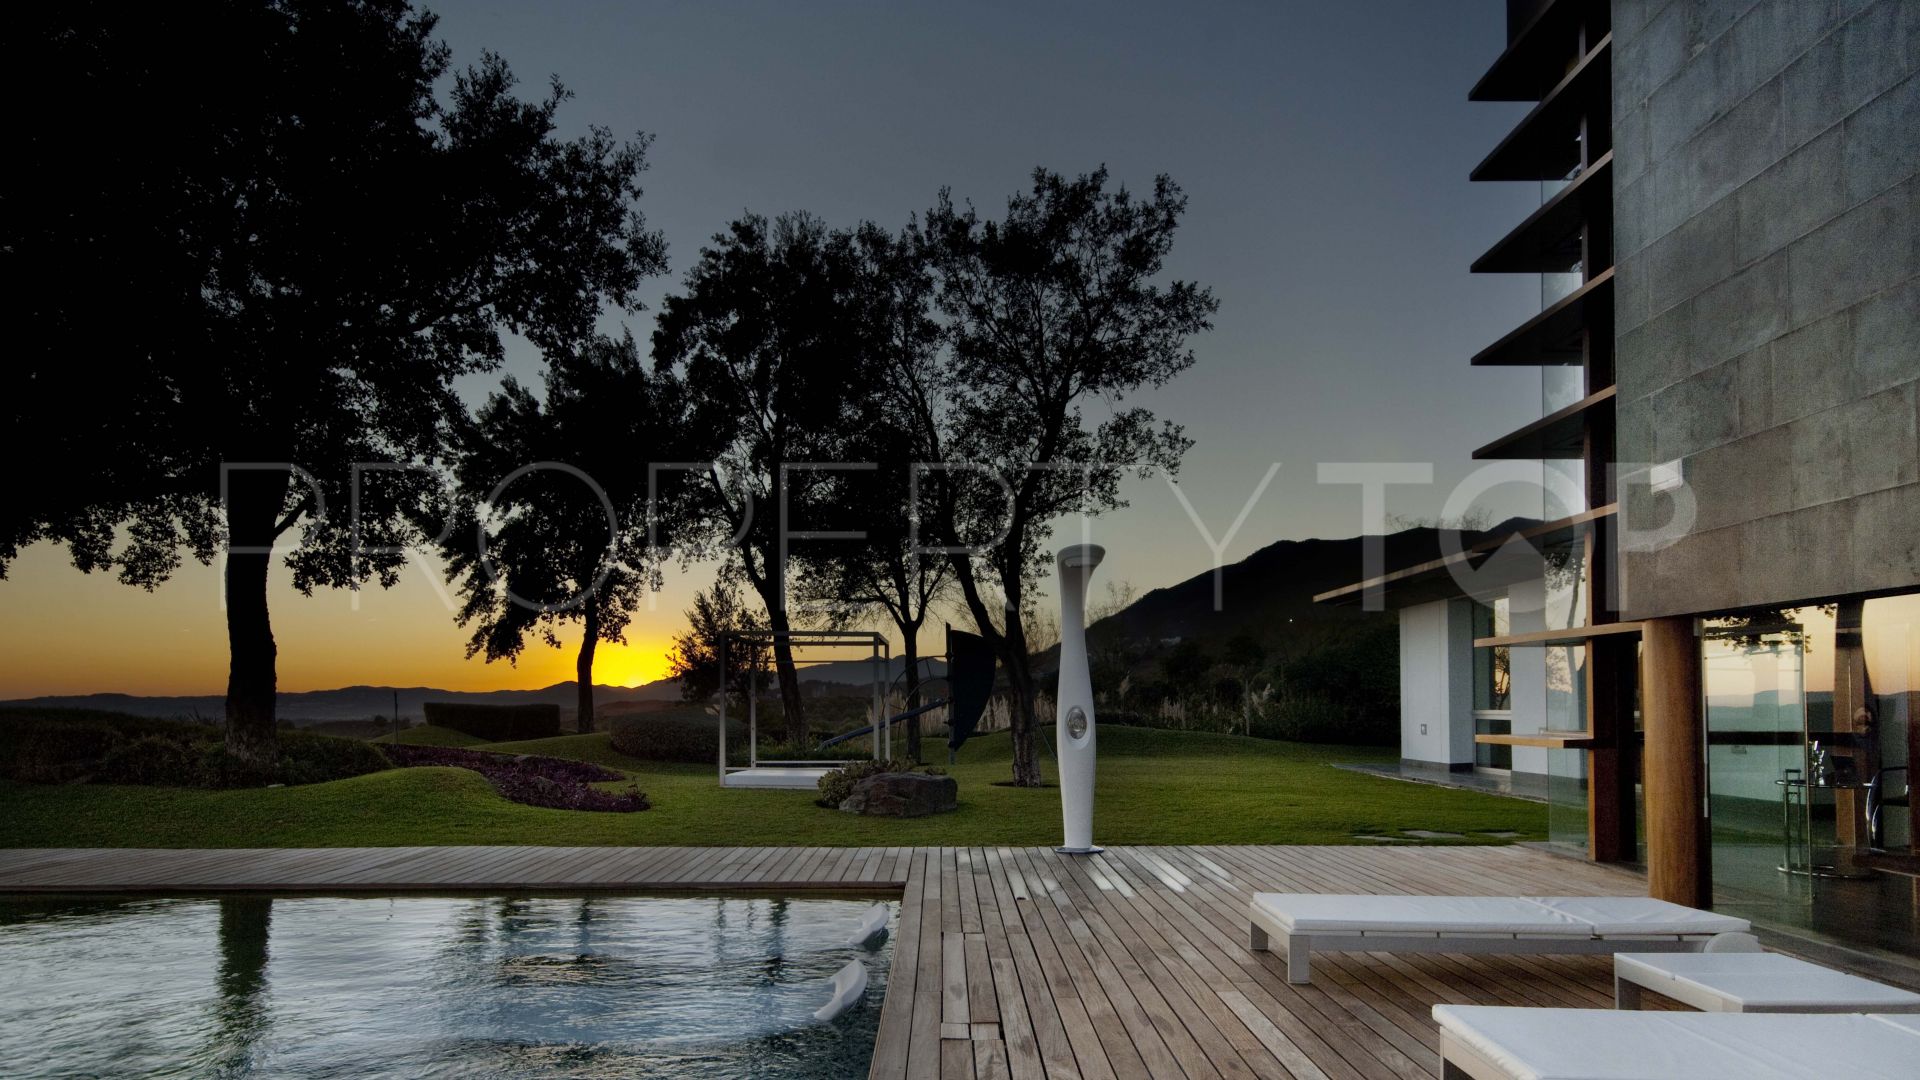 4 bedrooms Fuengirola villa for sale